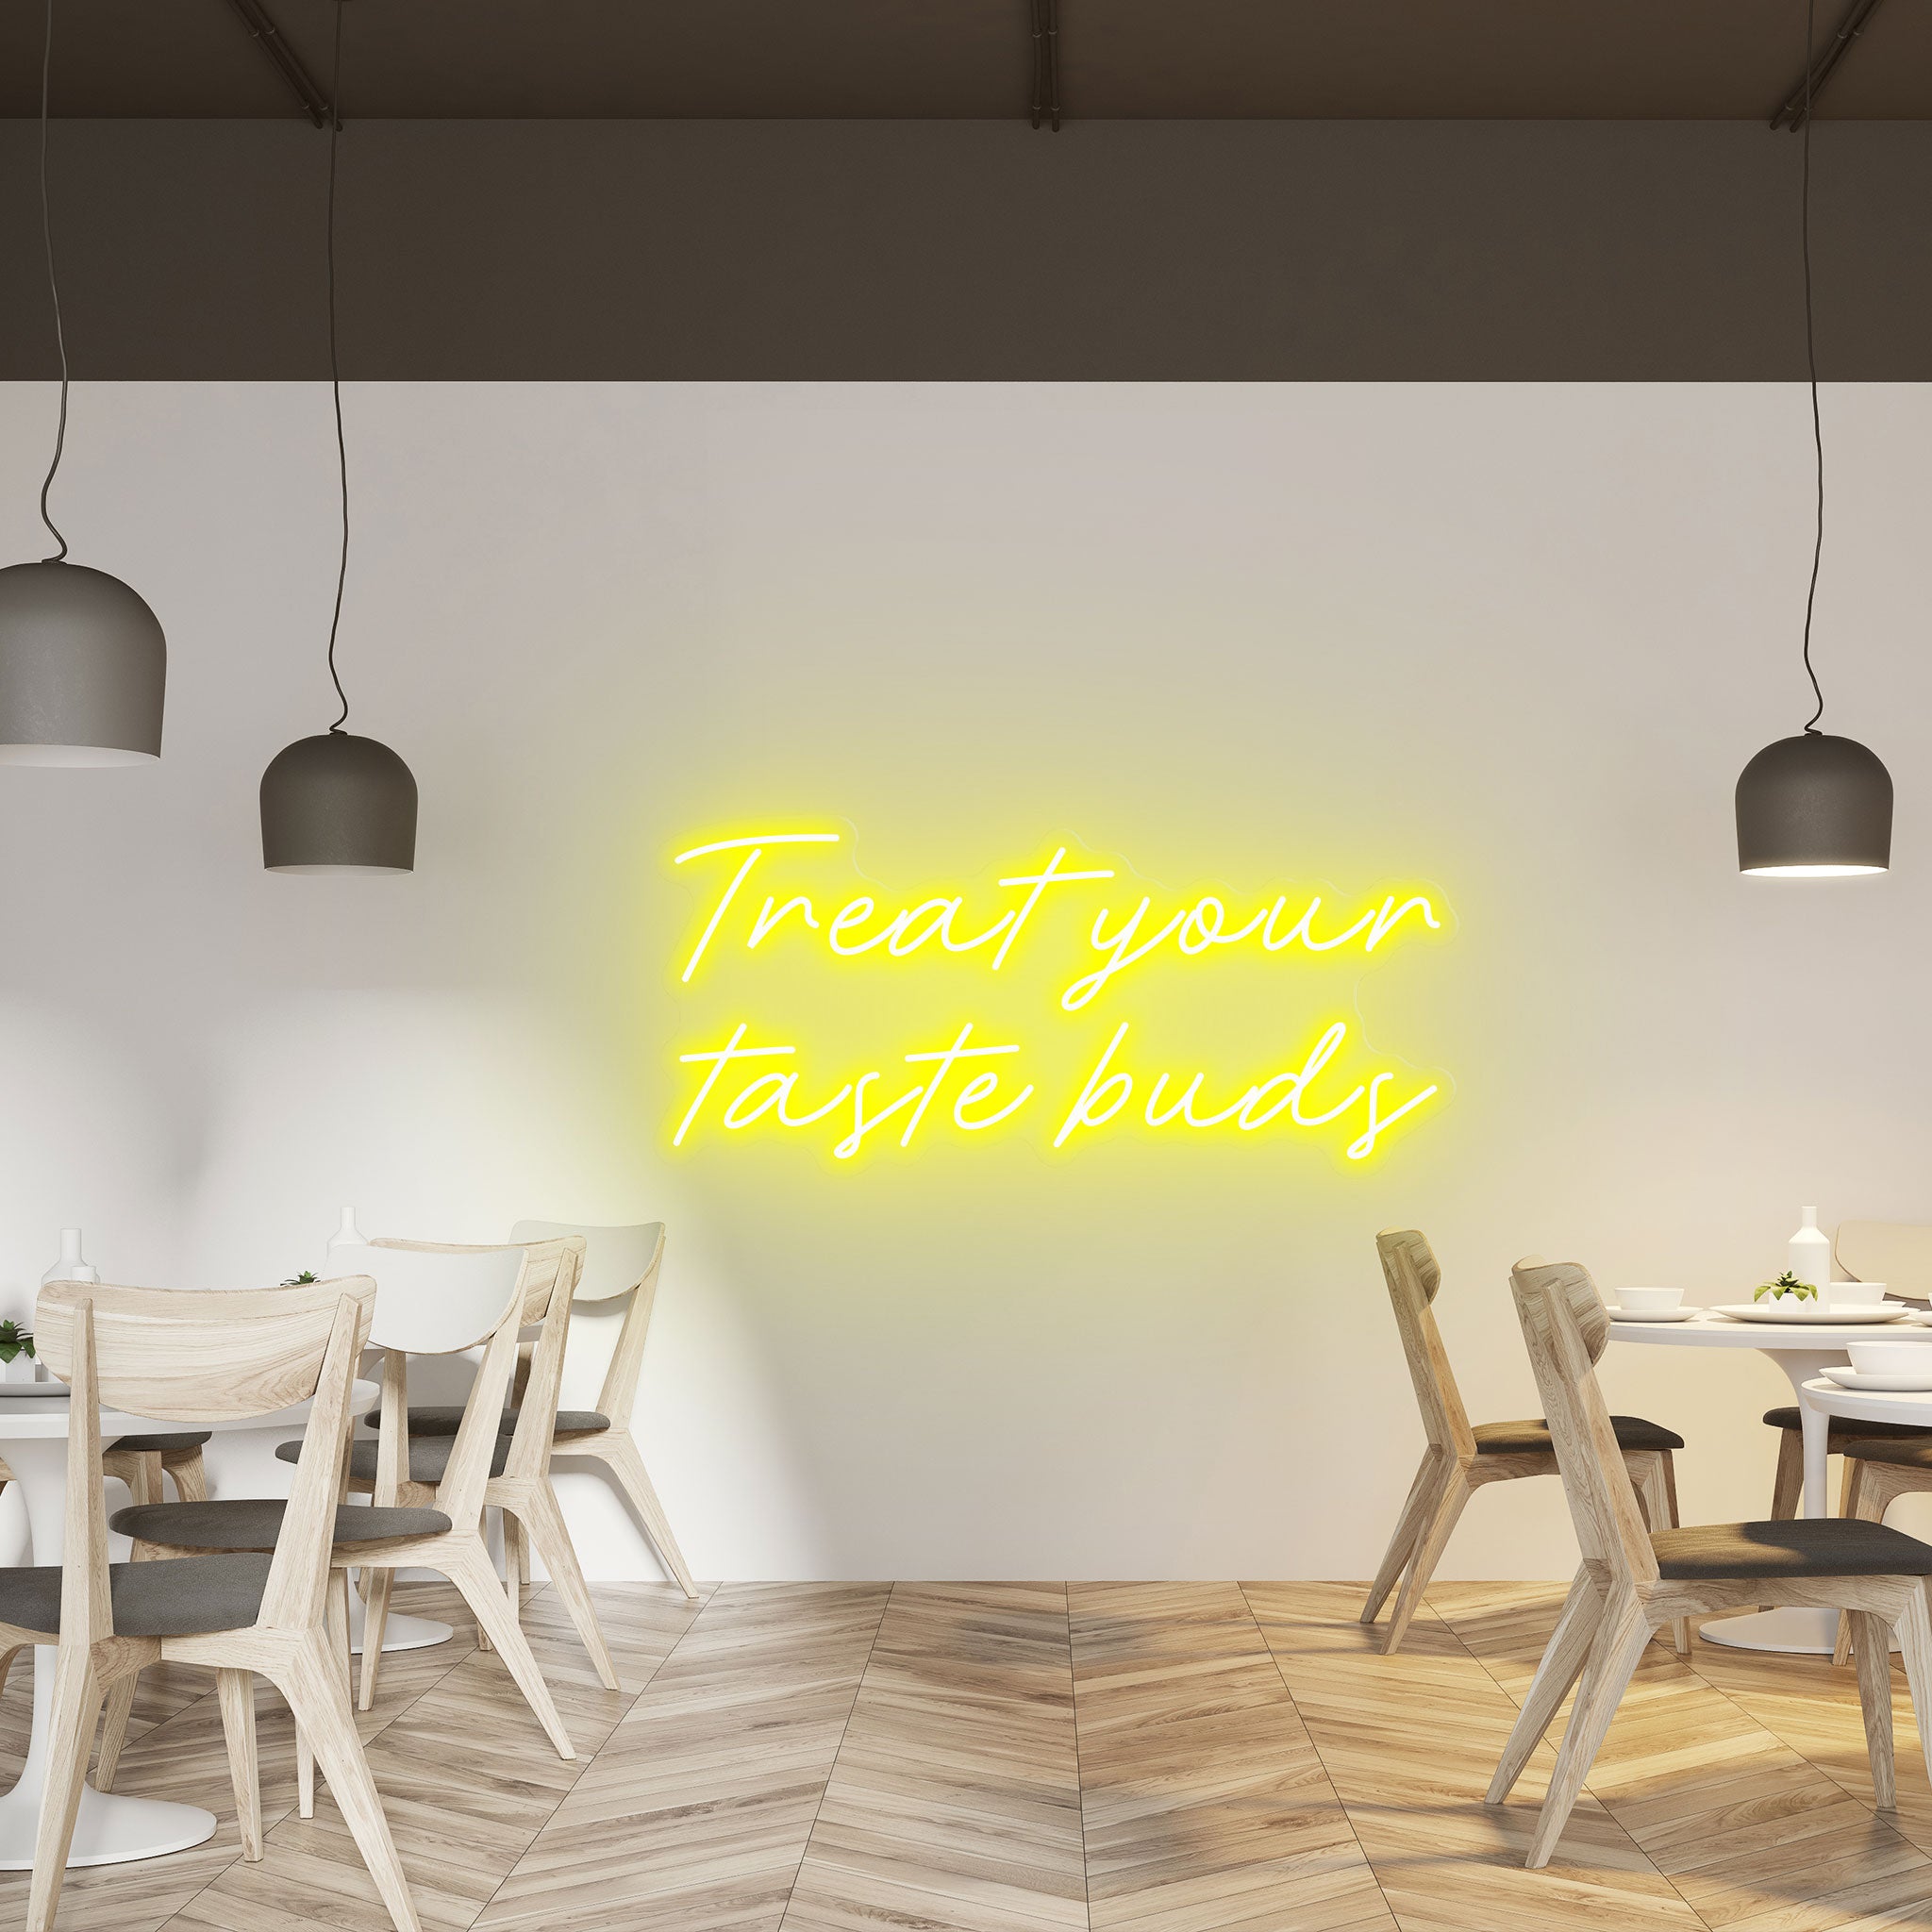 Treat Your Taste Buds - Neon Sign - Restaurant Venue